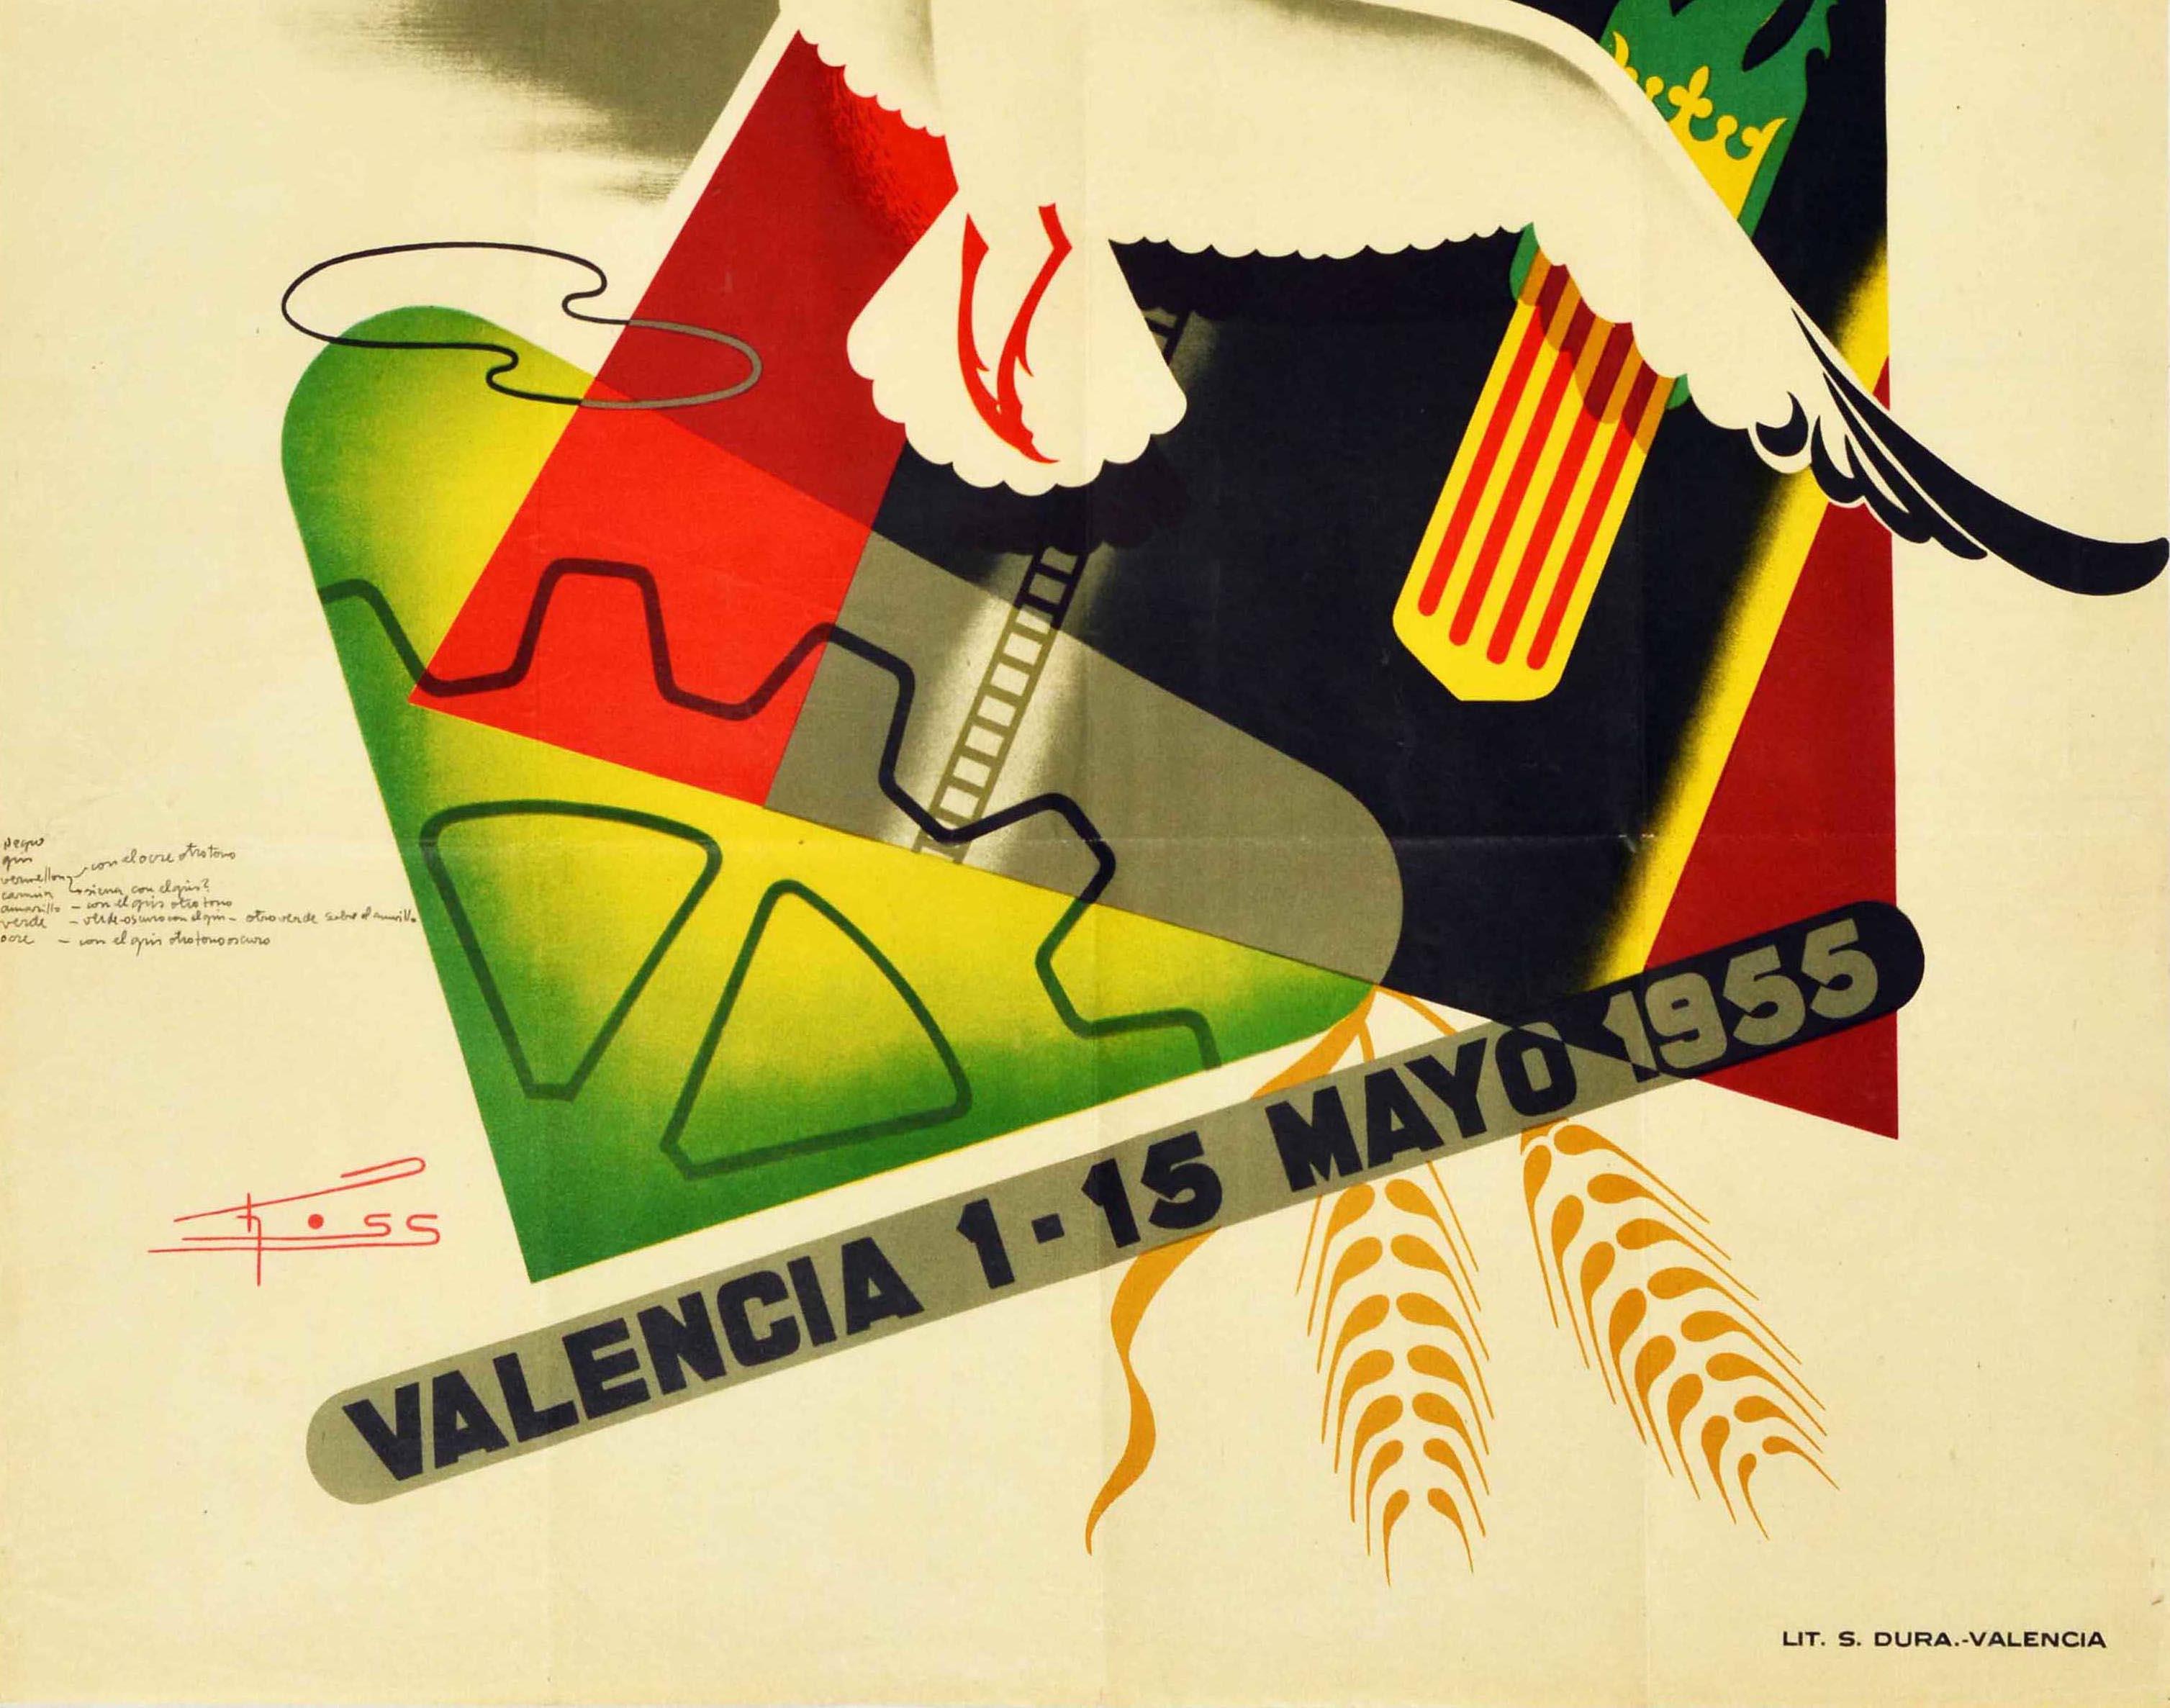 Original-Werbeplakat im Vintage-Stil für die XXXIII Feria Muestrario Internacional (Internationale Messe), die vom 1. bis 15. Mai 1955 in Valencia stattfand. Es zeigt einen eleganten Vogel, der mit ausgebreiteten Flügeln vor dem Bild eines